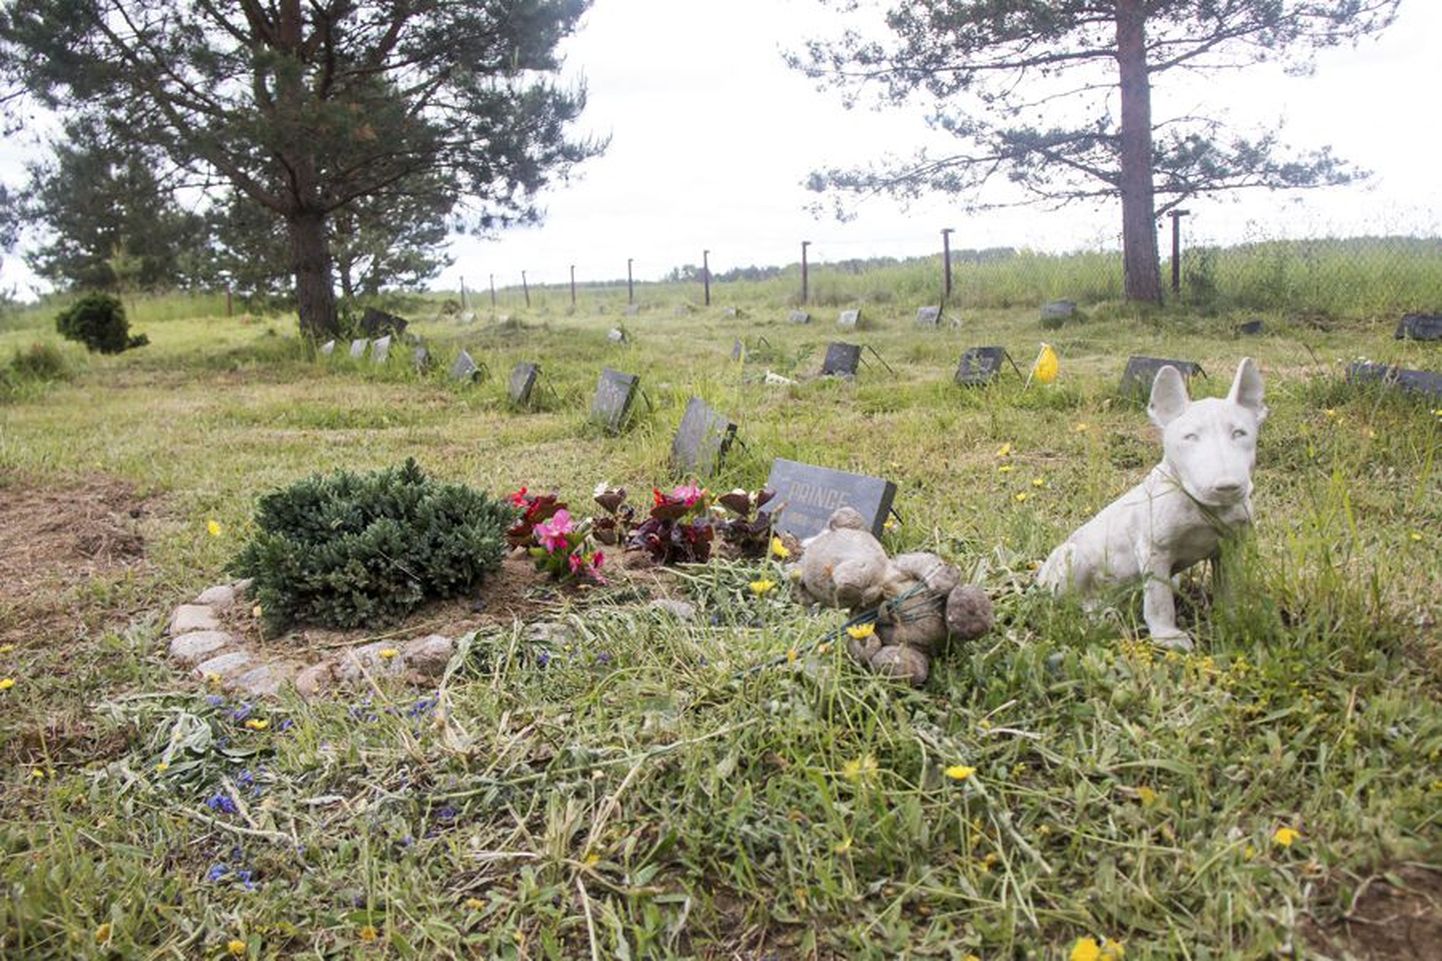 Eestis on mitu lemmikloomade matmispaika, kuid Viljandis veel mitte. Eriti vajaksid seda korteriomanikud, kellel ei ole aeda, kuhu oma lemmik sängitada. Pilt on tehtud Rakvere külje all asuval kalmistul.